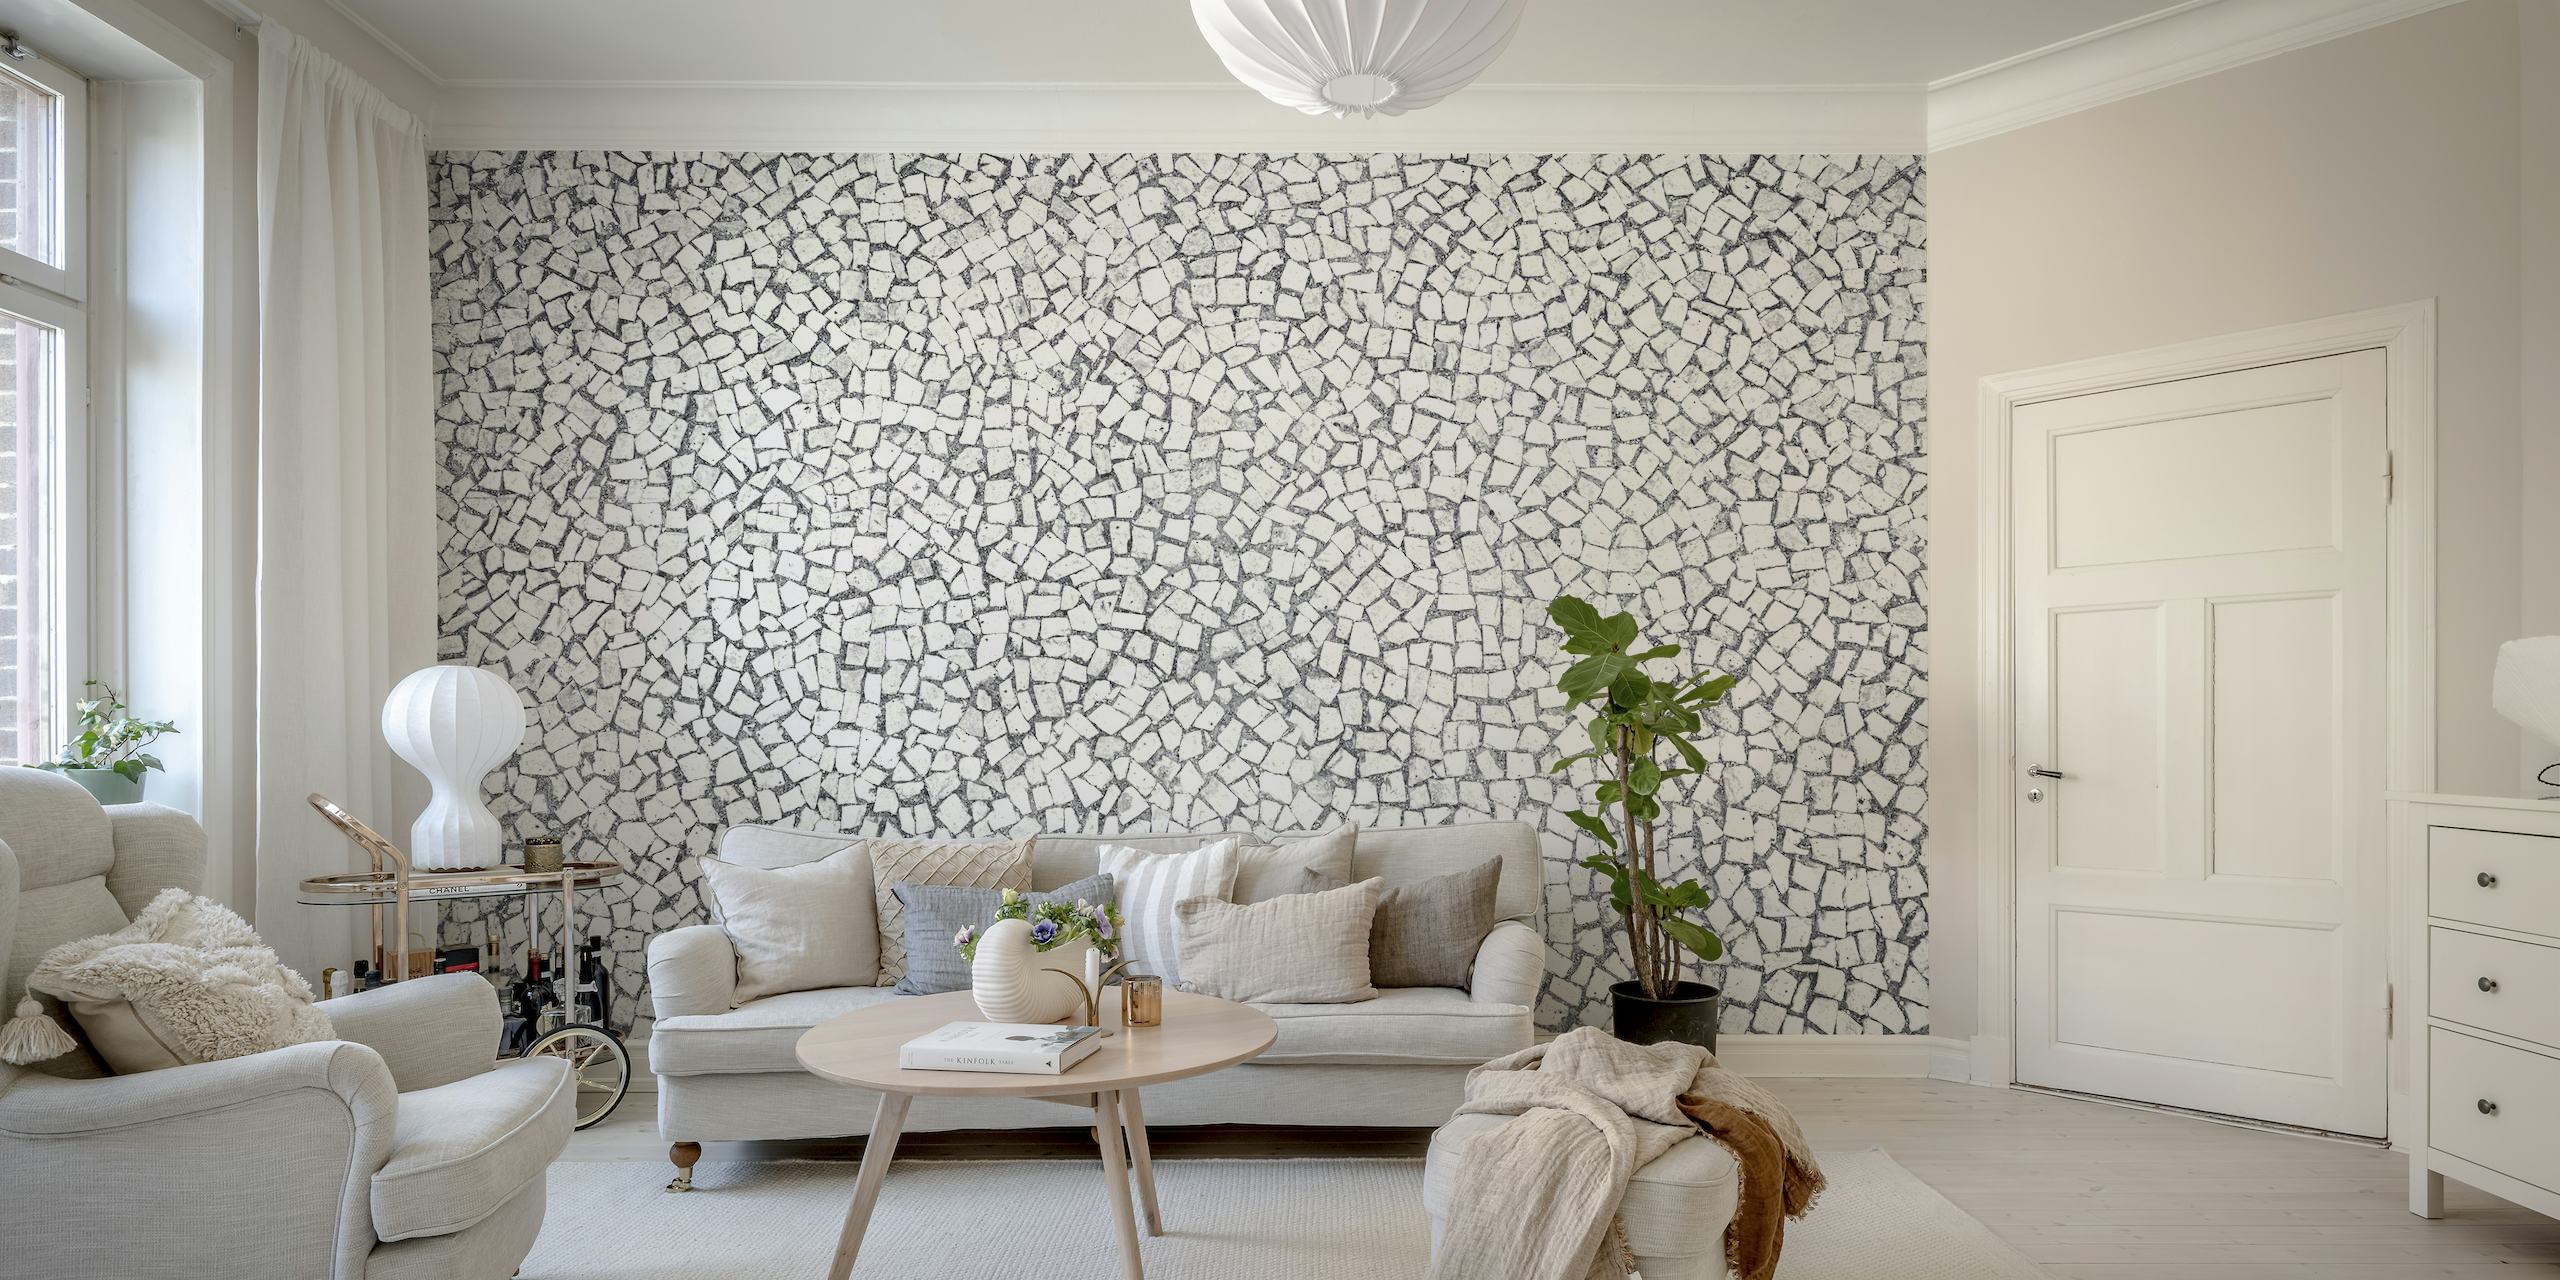 Zidna slika s uzorkom jednobojnih mozaičkih pločica